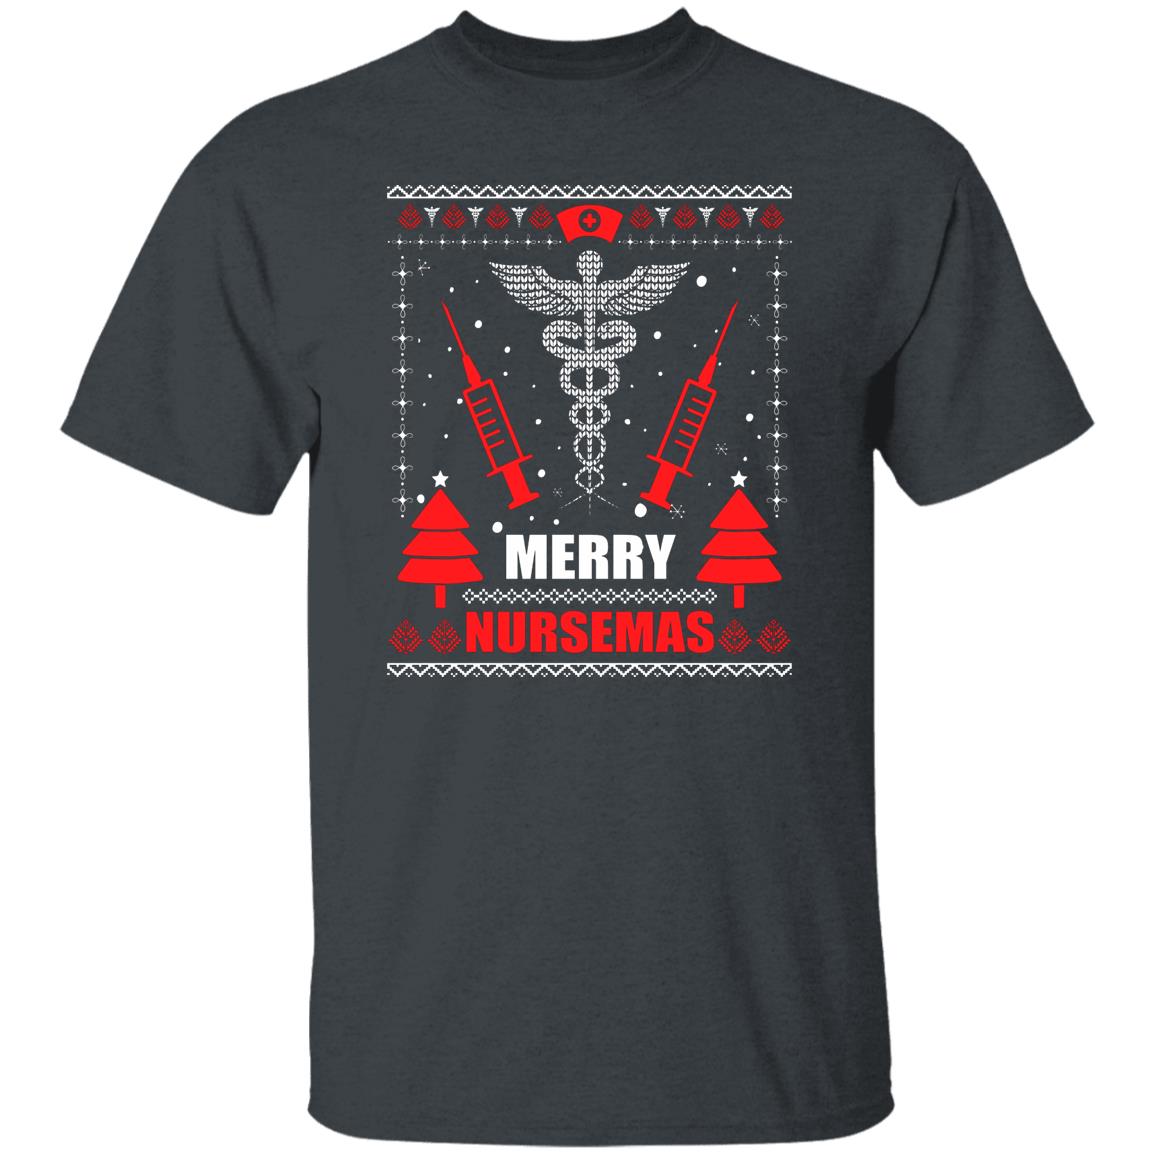 Merry Nursemas Funny Ugly Christmas Gift Shirt